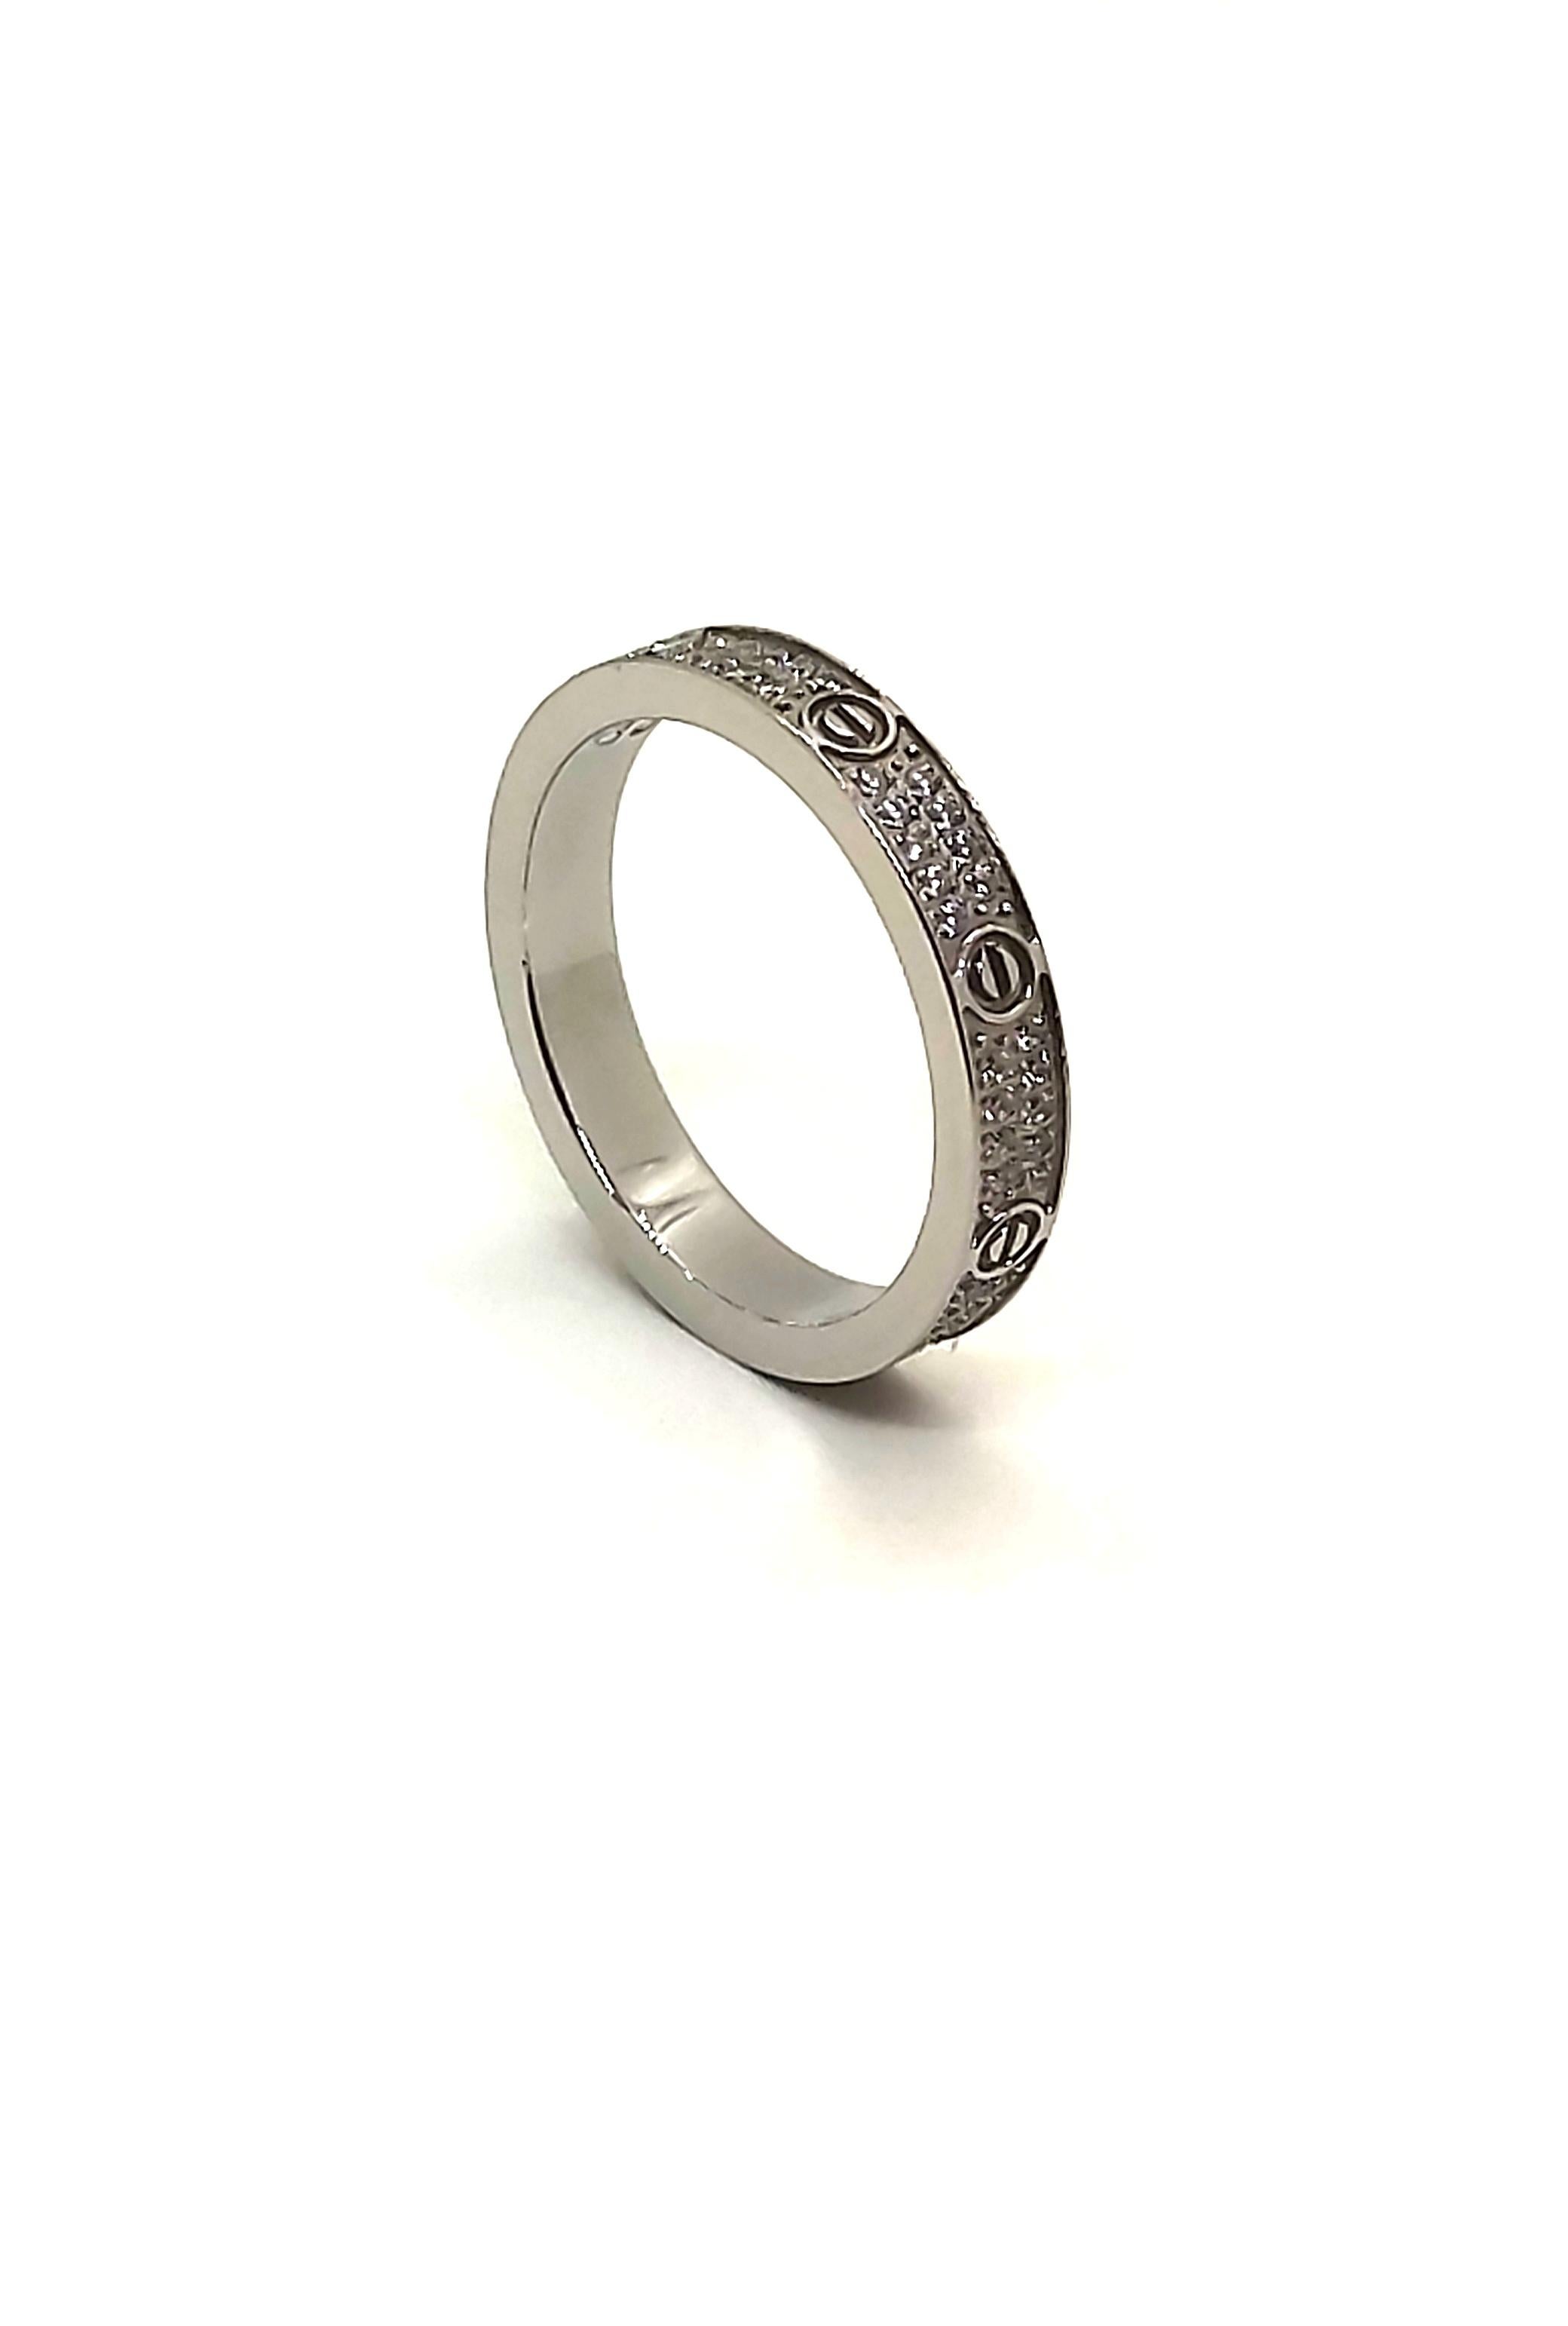 Der Love-Ring von Cartier ist nach wie vor eine beliebte Wahl, wenn es um die Wahl eines Hochzeits- oder Verlobungsrings geht. Die durch Schraubenmotive hervorgehobene Ikone Love aus den 1970er Jahren steht für zeitlose Romantik.
Dieser Ring ist aus